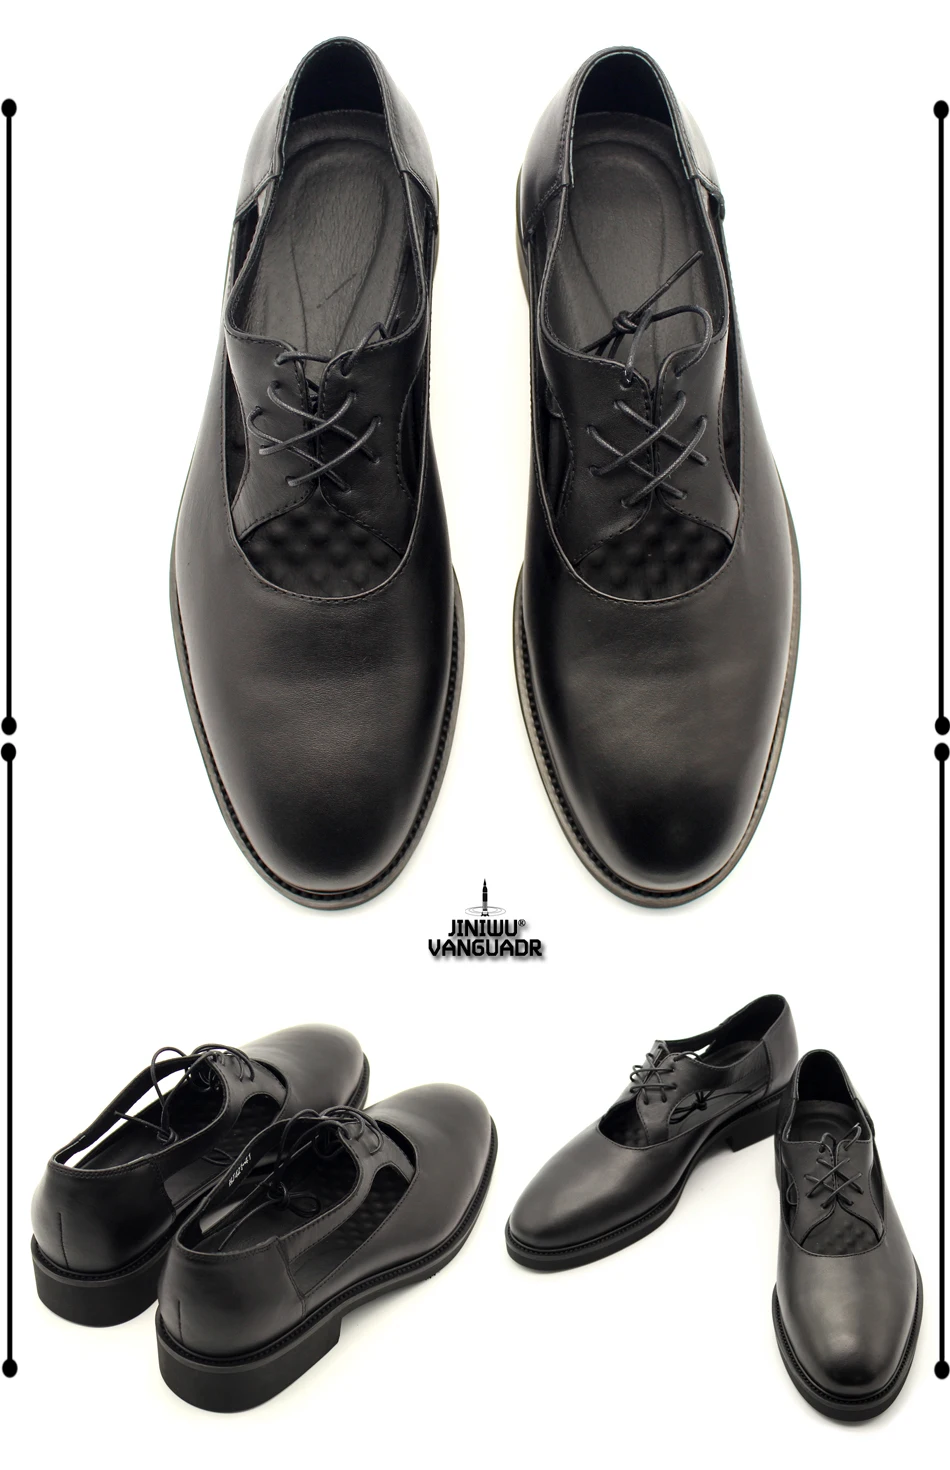 2017 новое прибытие полые черные сандалии топ qaulity указал натуральная кожа квартиры для мужчин случайные кожаные ботинки дешевые цены размер